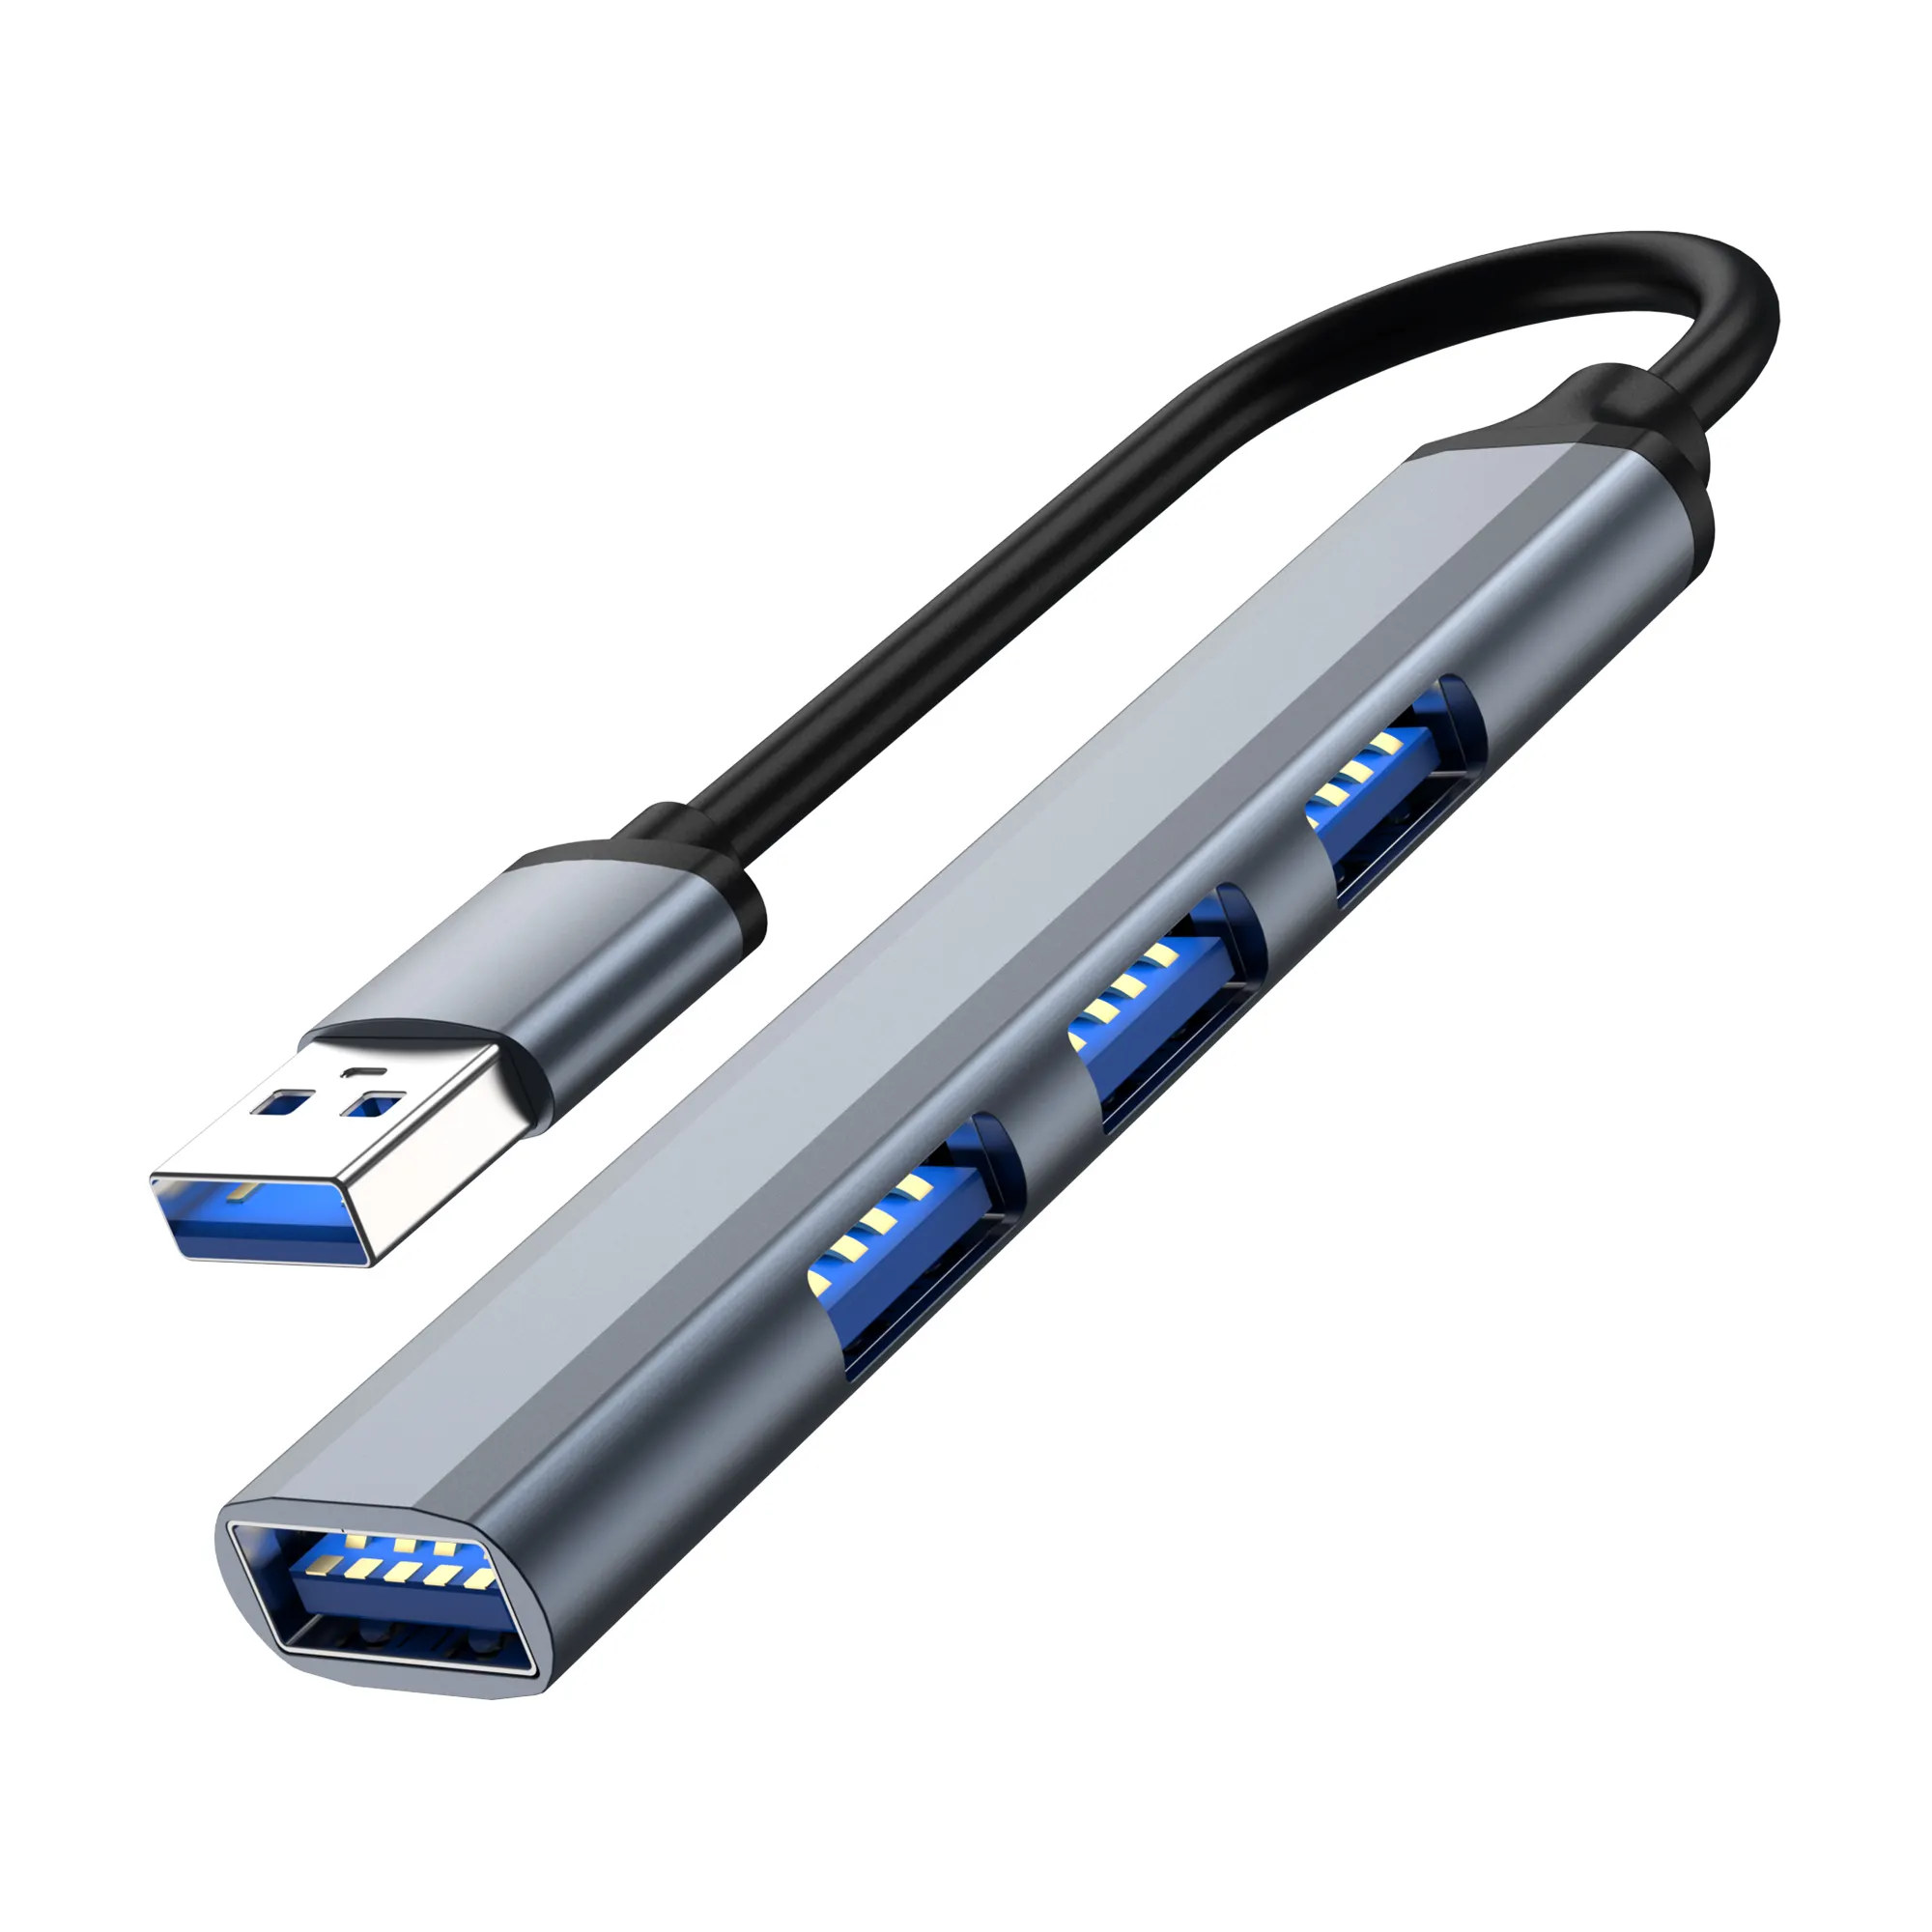 4 1 USB 3.0 허브 유형 C USB 4 포트 멀티 스플리터 어댑터 OTG 유형 C 허브 레노버 맥북 프로 PC 컴퓨터 액세서리